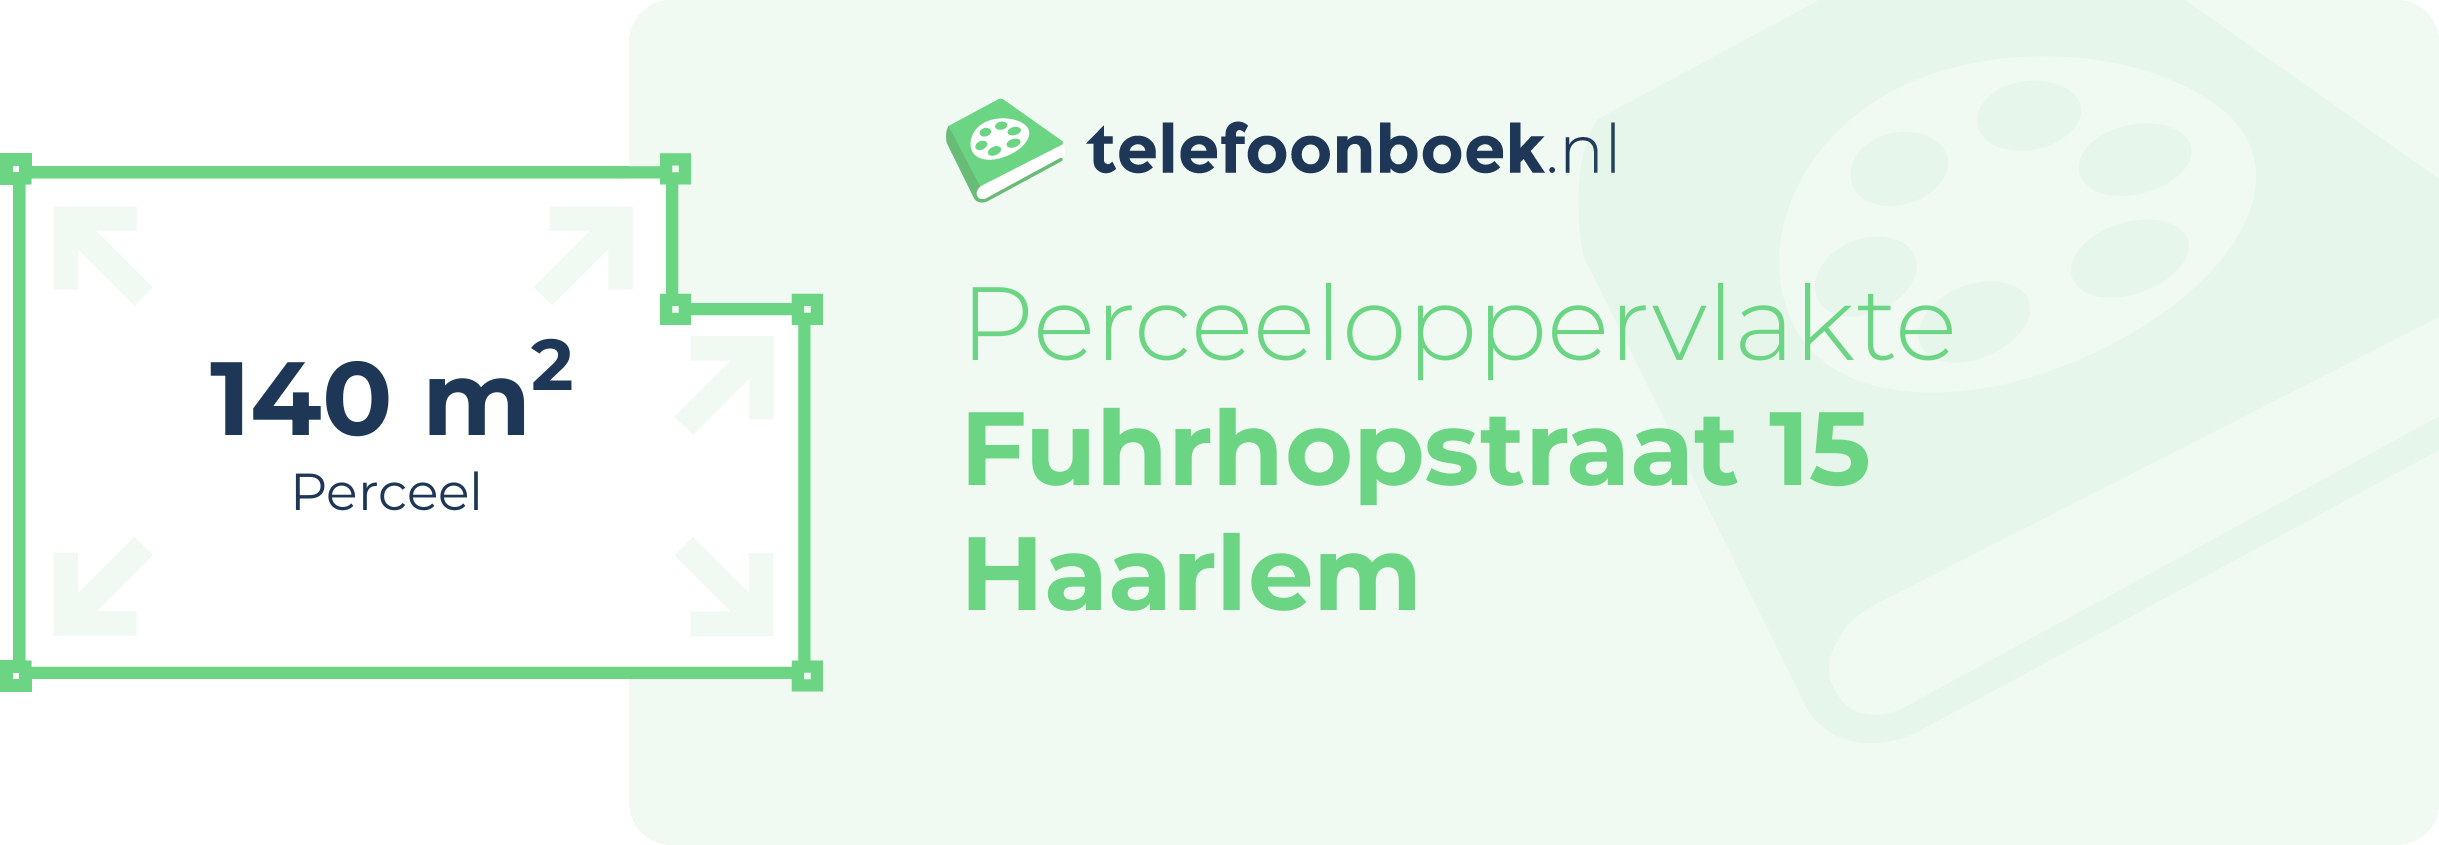 Perceeloppervlakte Fuhrhopstraat 15 Haarlem